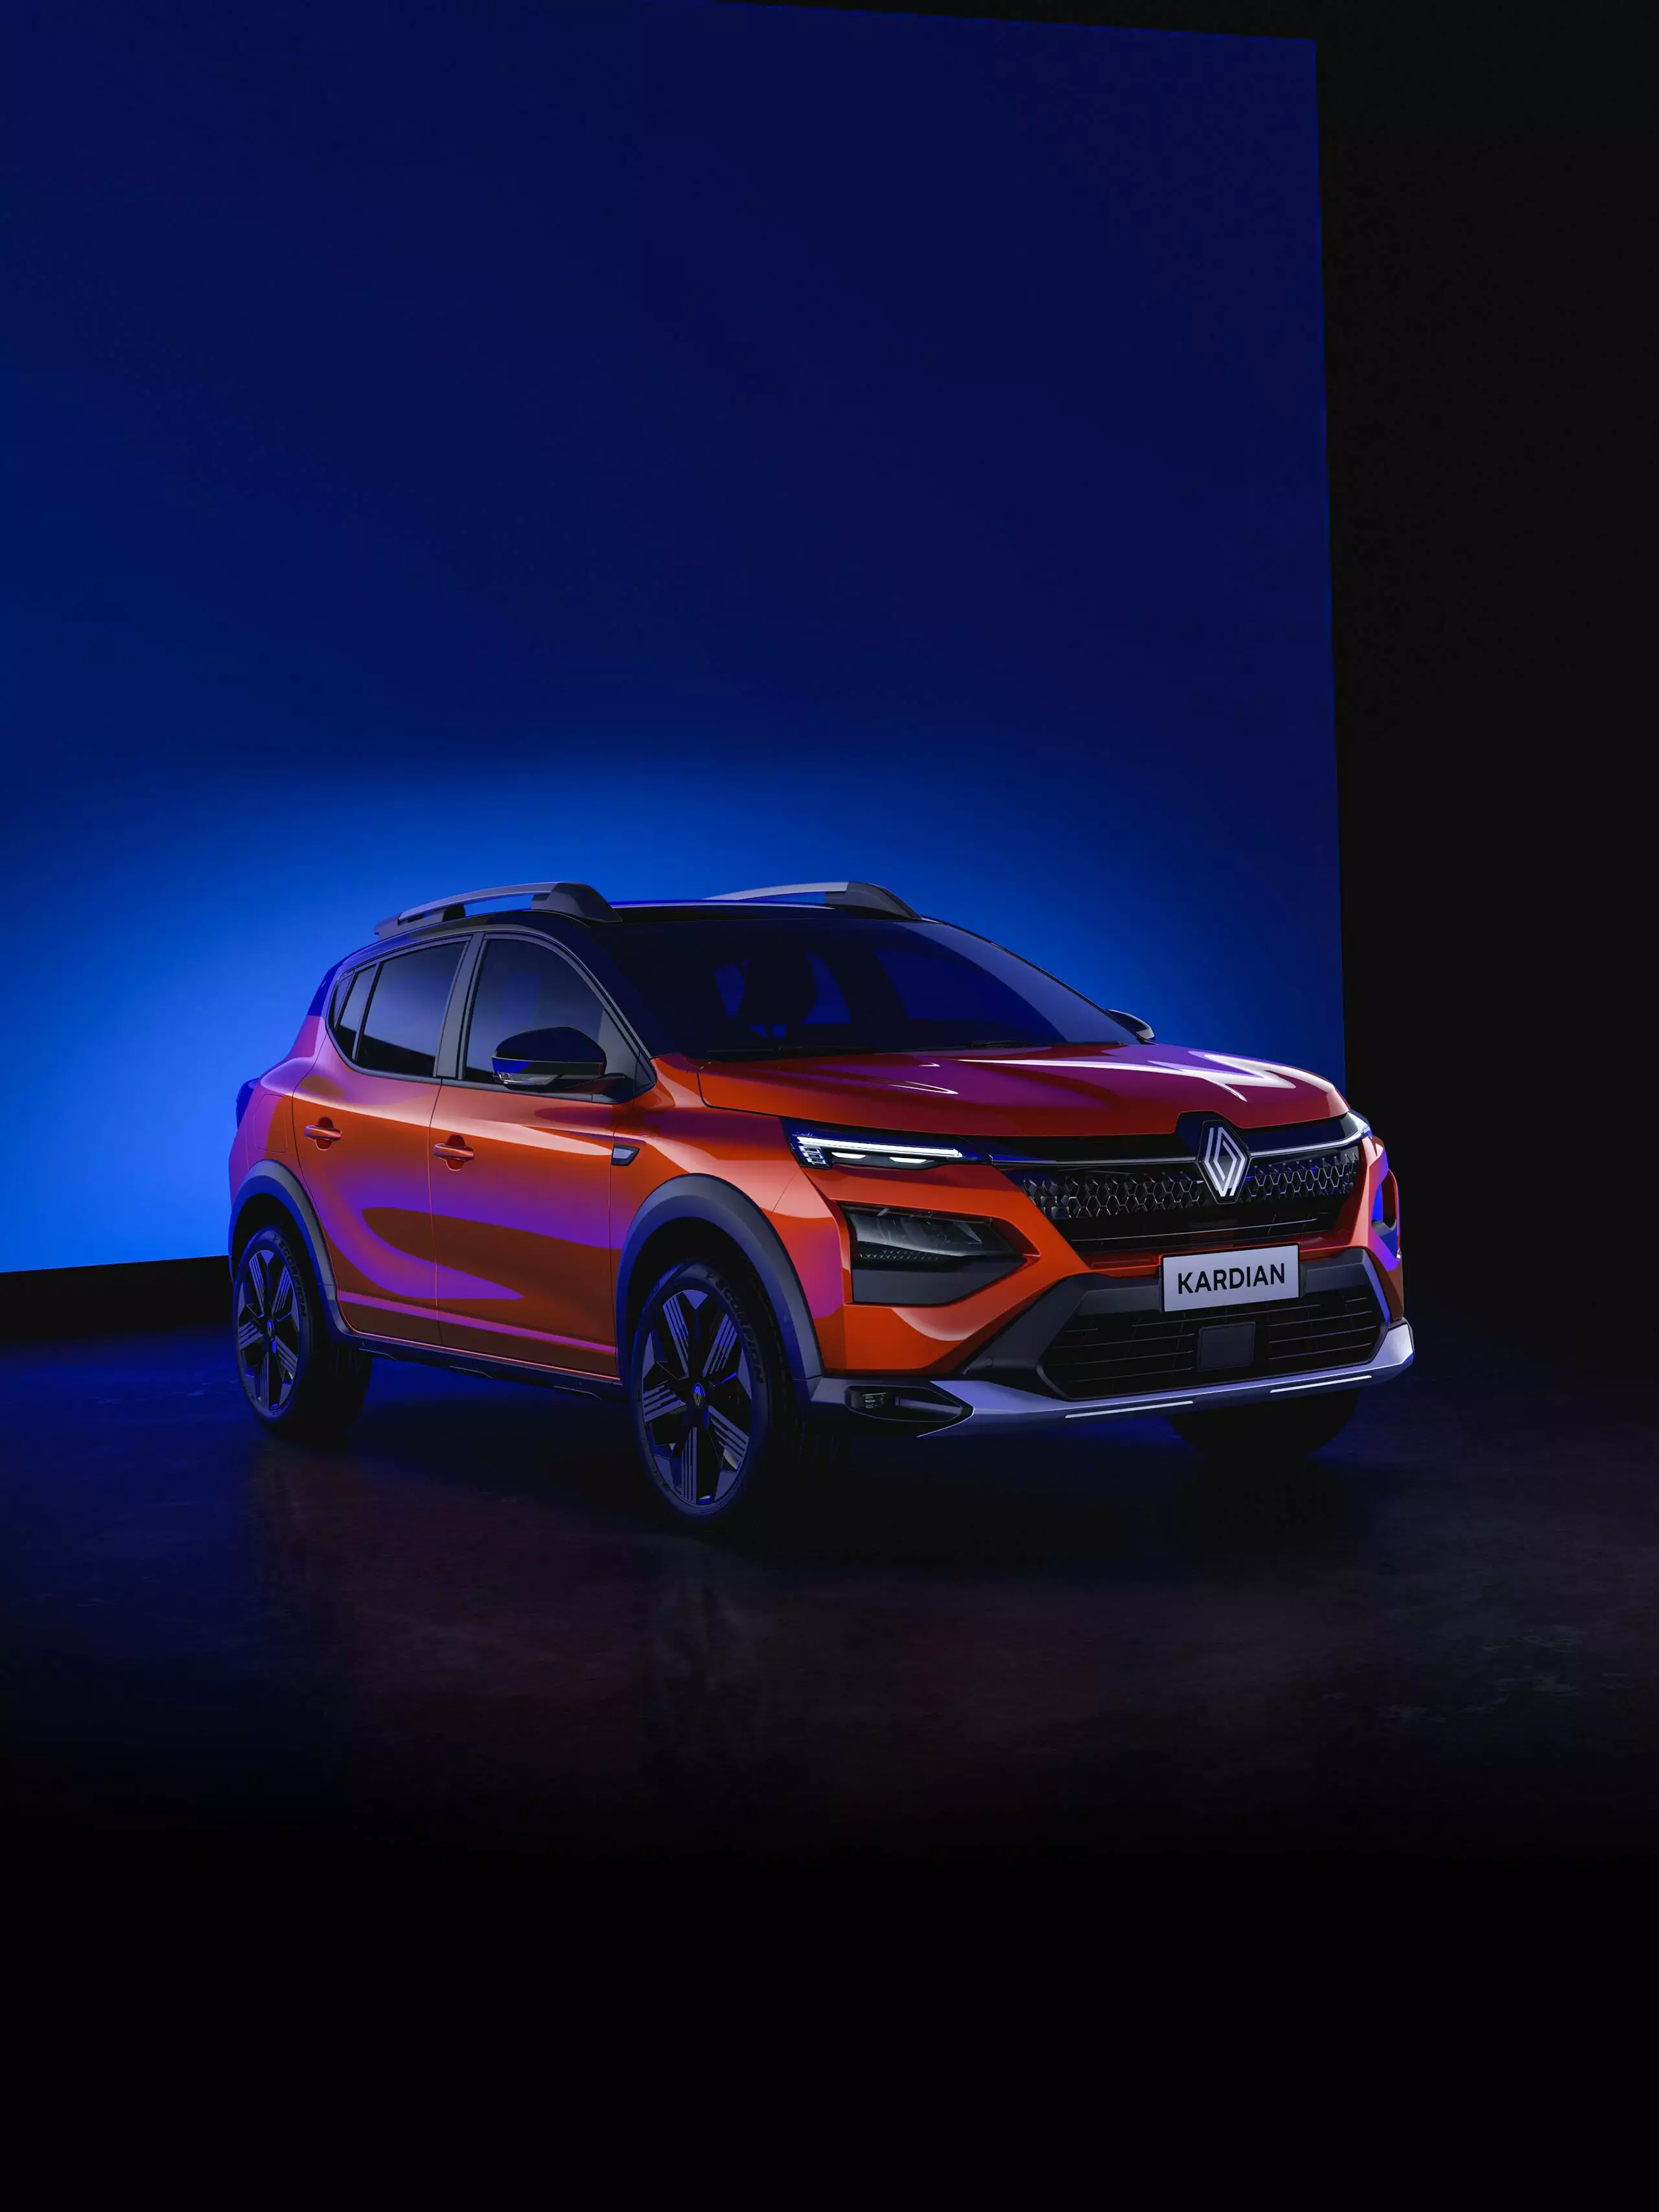 Renault inicia pré-venda do Kardian, primeiro veículo do International Game Plan 2027